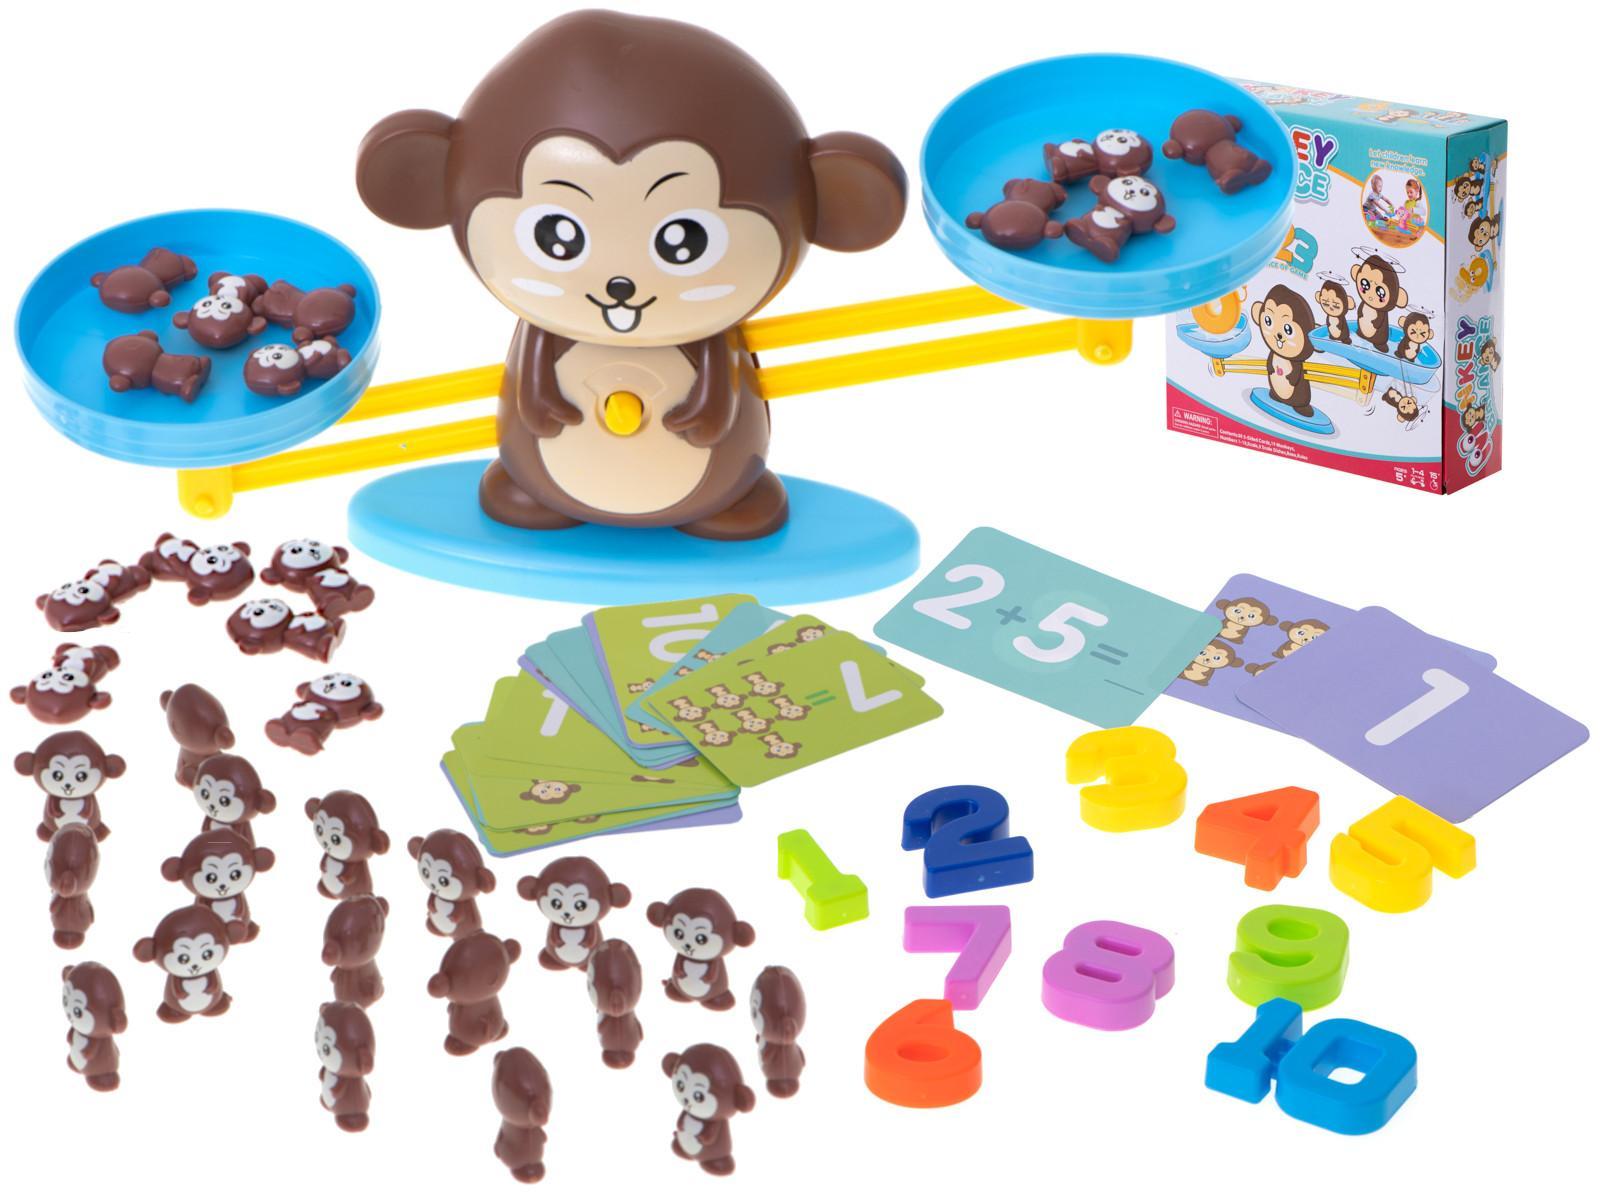 Waga szalkowa edukacyjna nauka liczenia małpka duża dla dzieci 34,5x9,5x8 cm 0 Full Screen